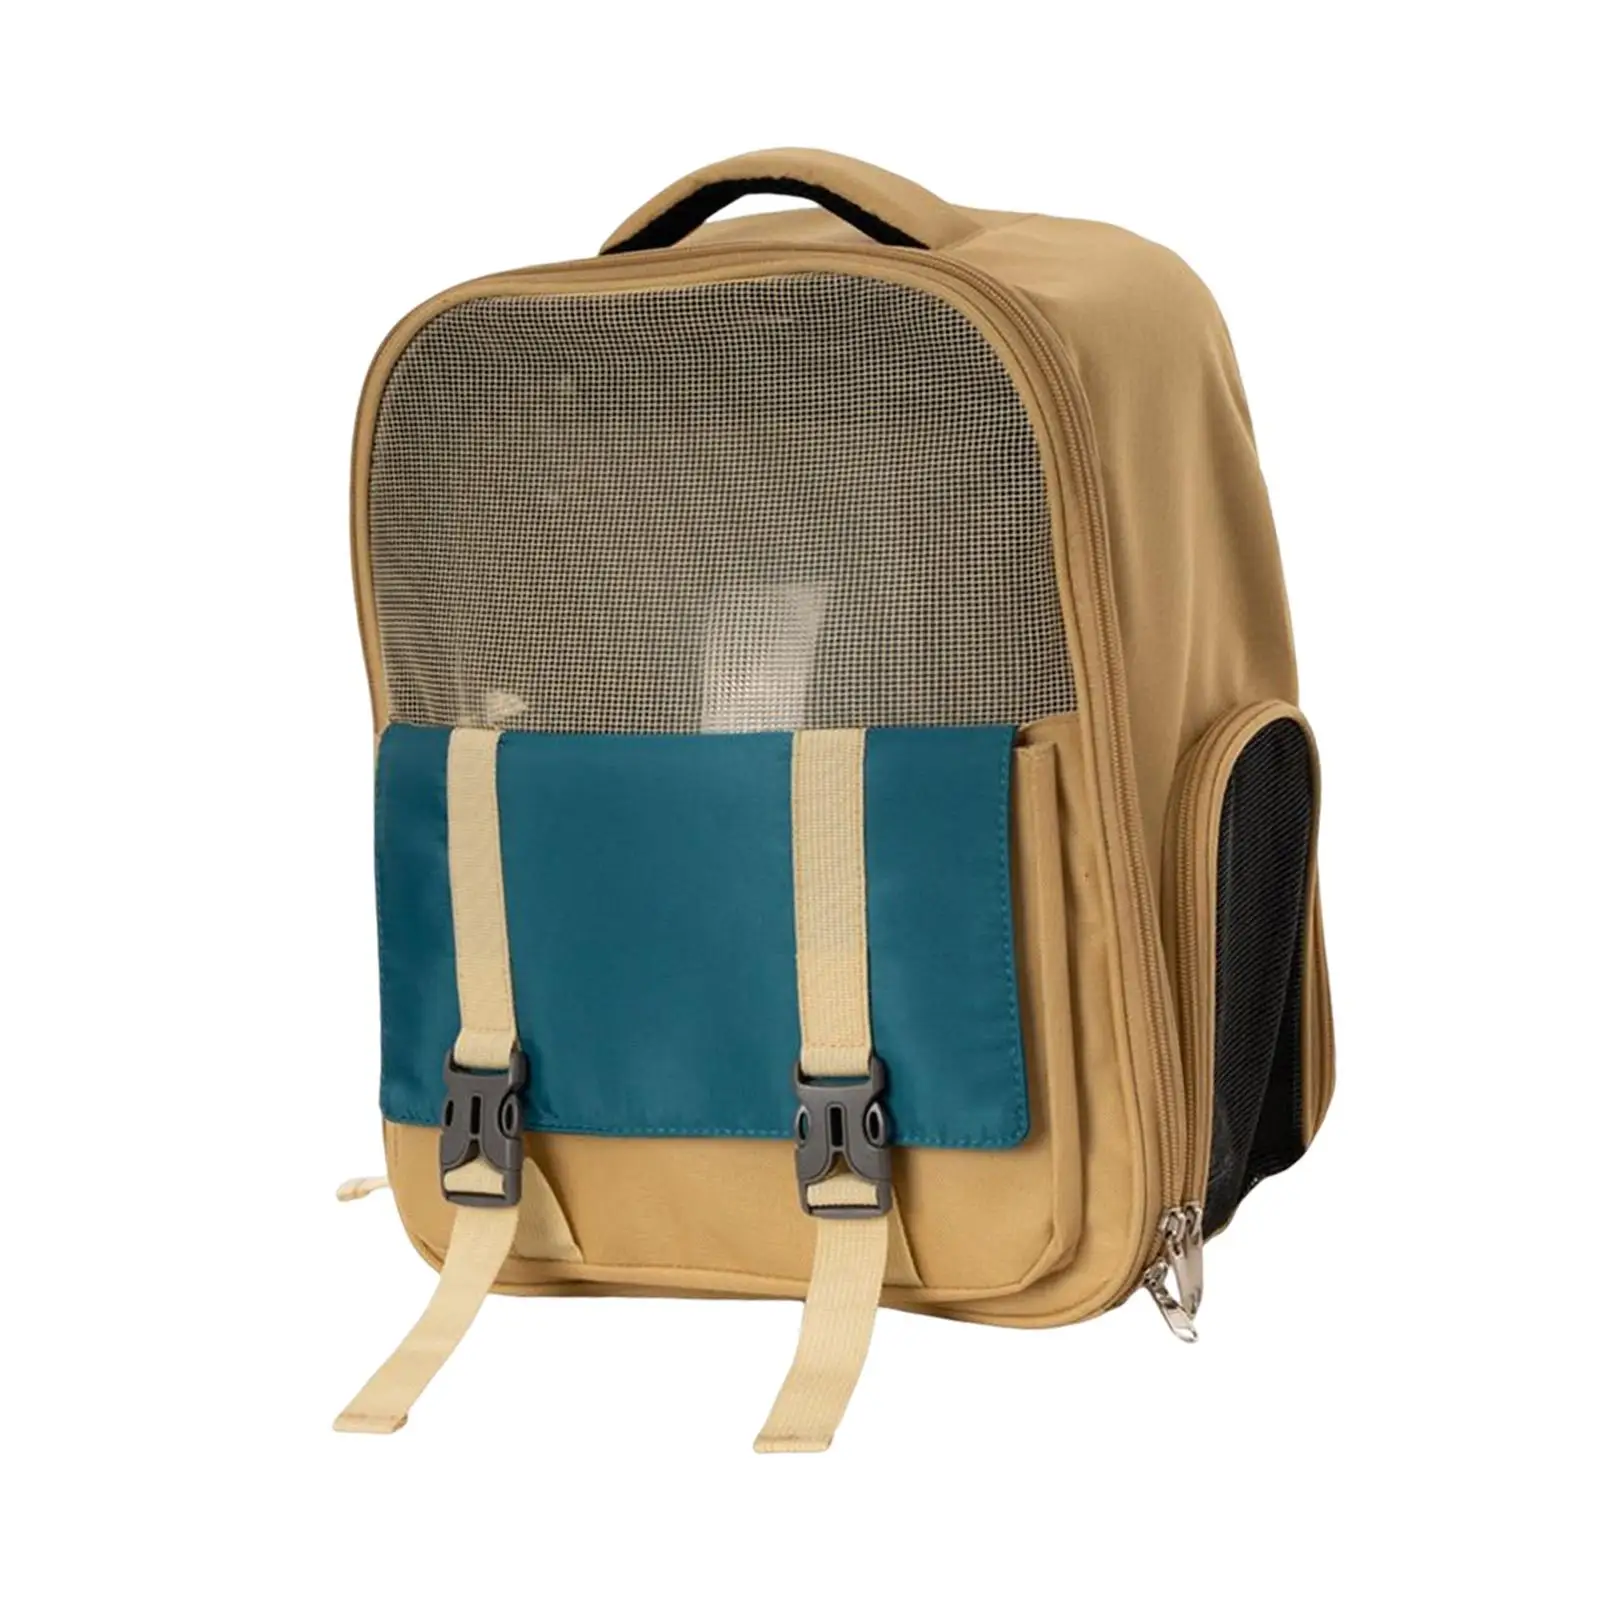 Cat Carrier Backpack Dog Travel Bag Carrying Bag Adjustable Shoulder Strap Ventilated Pet Backpack for Kitten